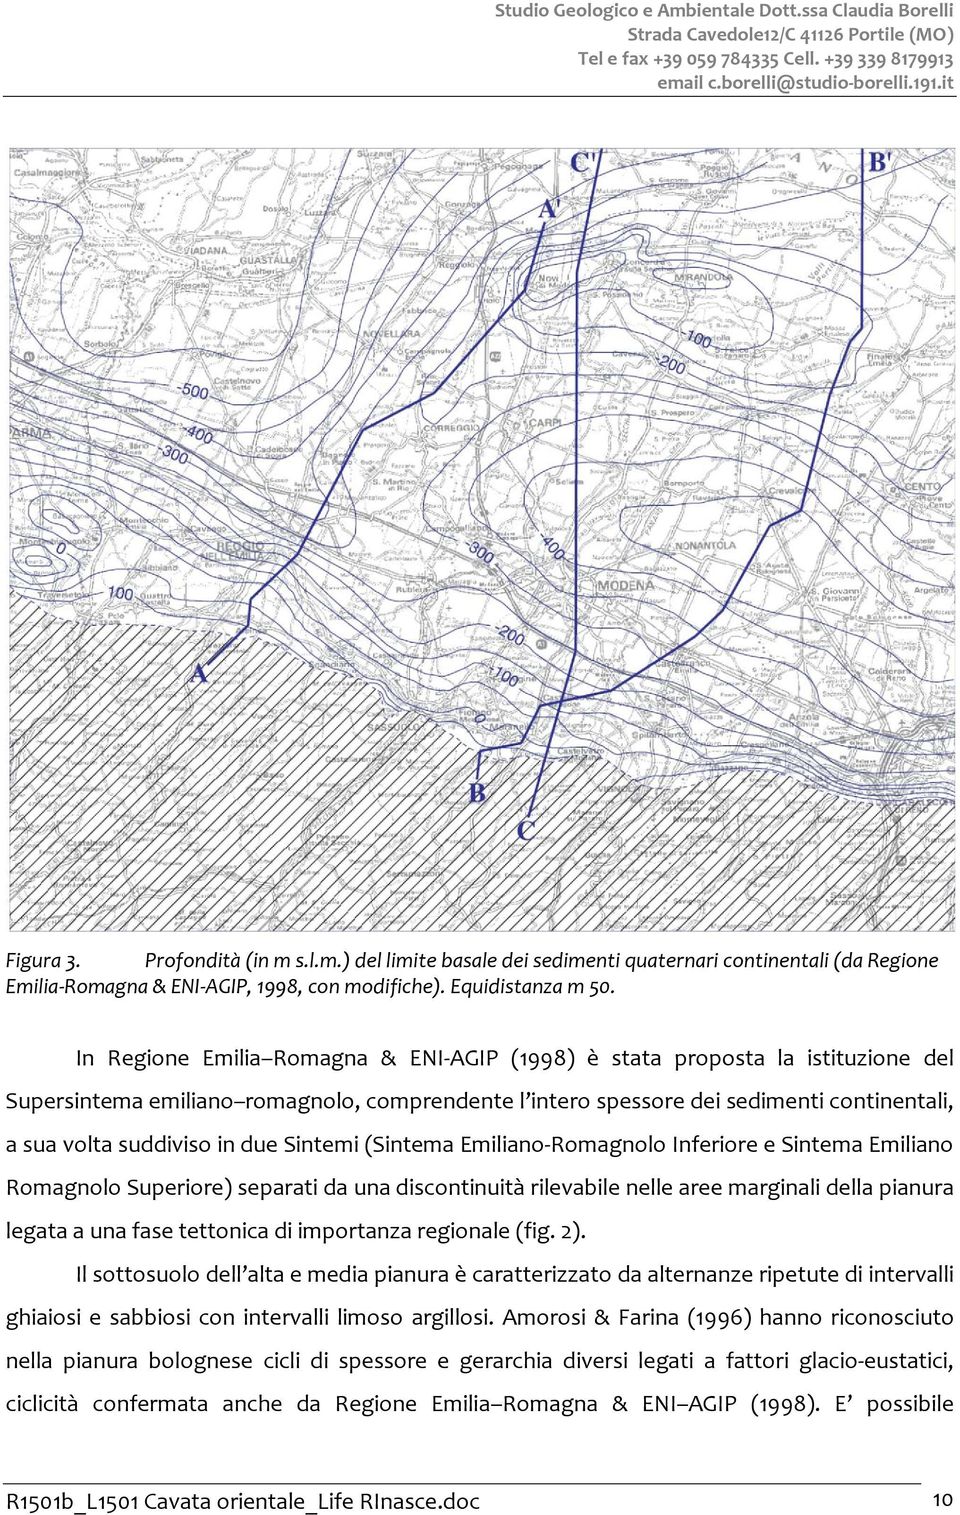 In Regione Emilia Romagna & ENI-AGIP (1998) è stata proposta la istituzione del Supersintema emiliano romagnolo, comprendente l intero spessore dei sedimenti continentali, a sua volta suddiviso in